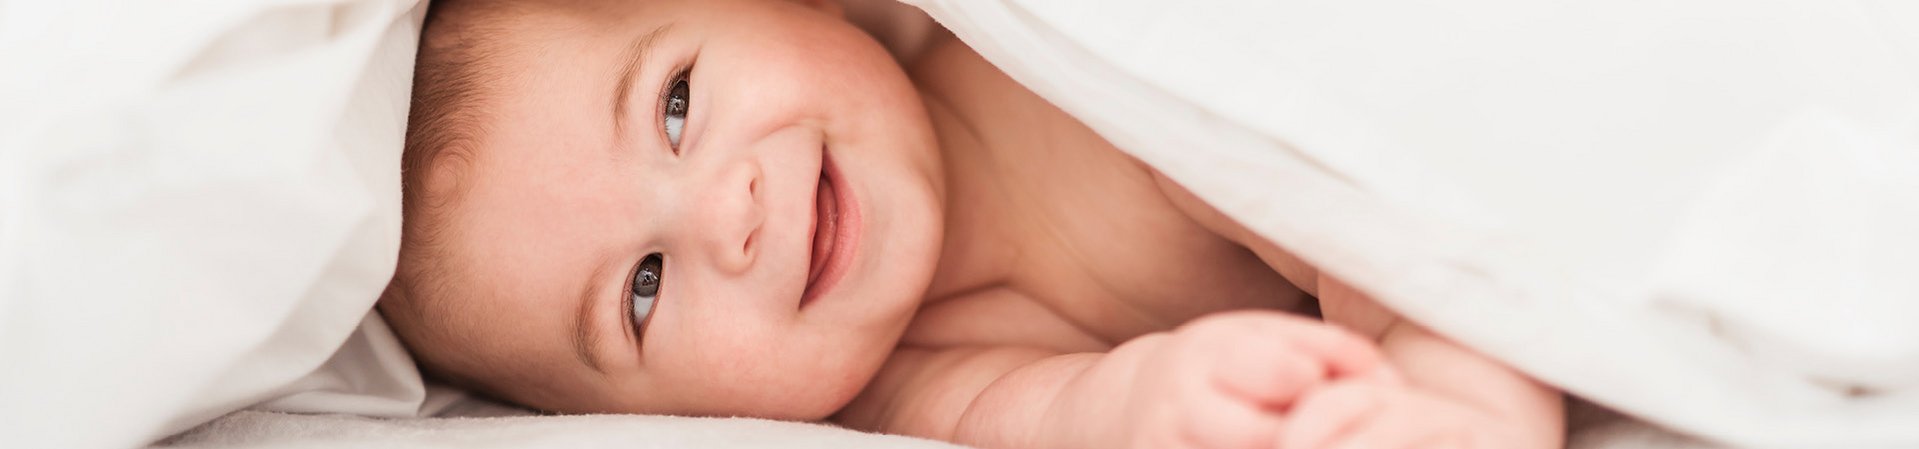 [Translate to Niederländisch:] Lächelndes Baby unter einer weißen Decke